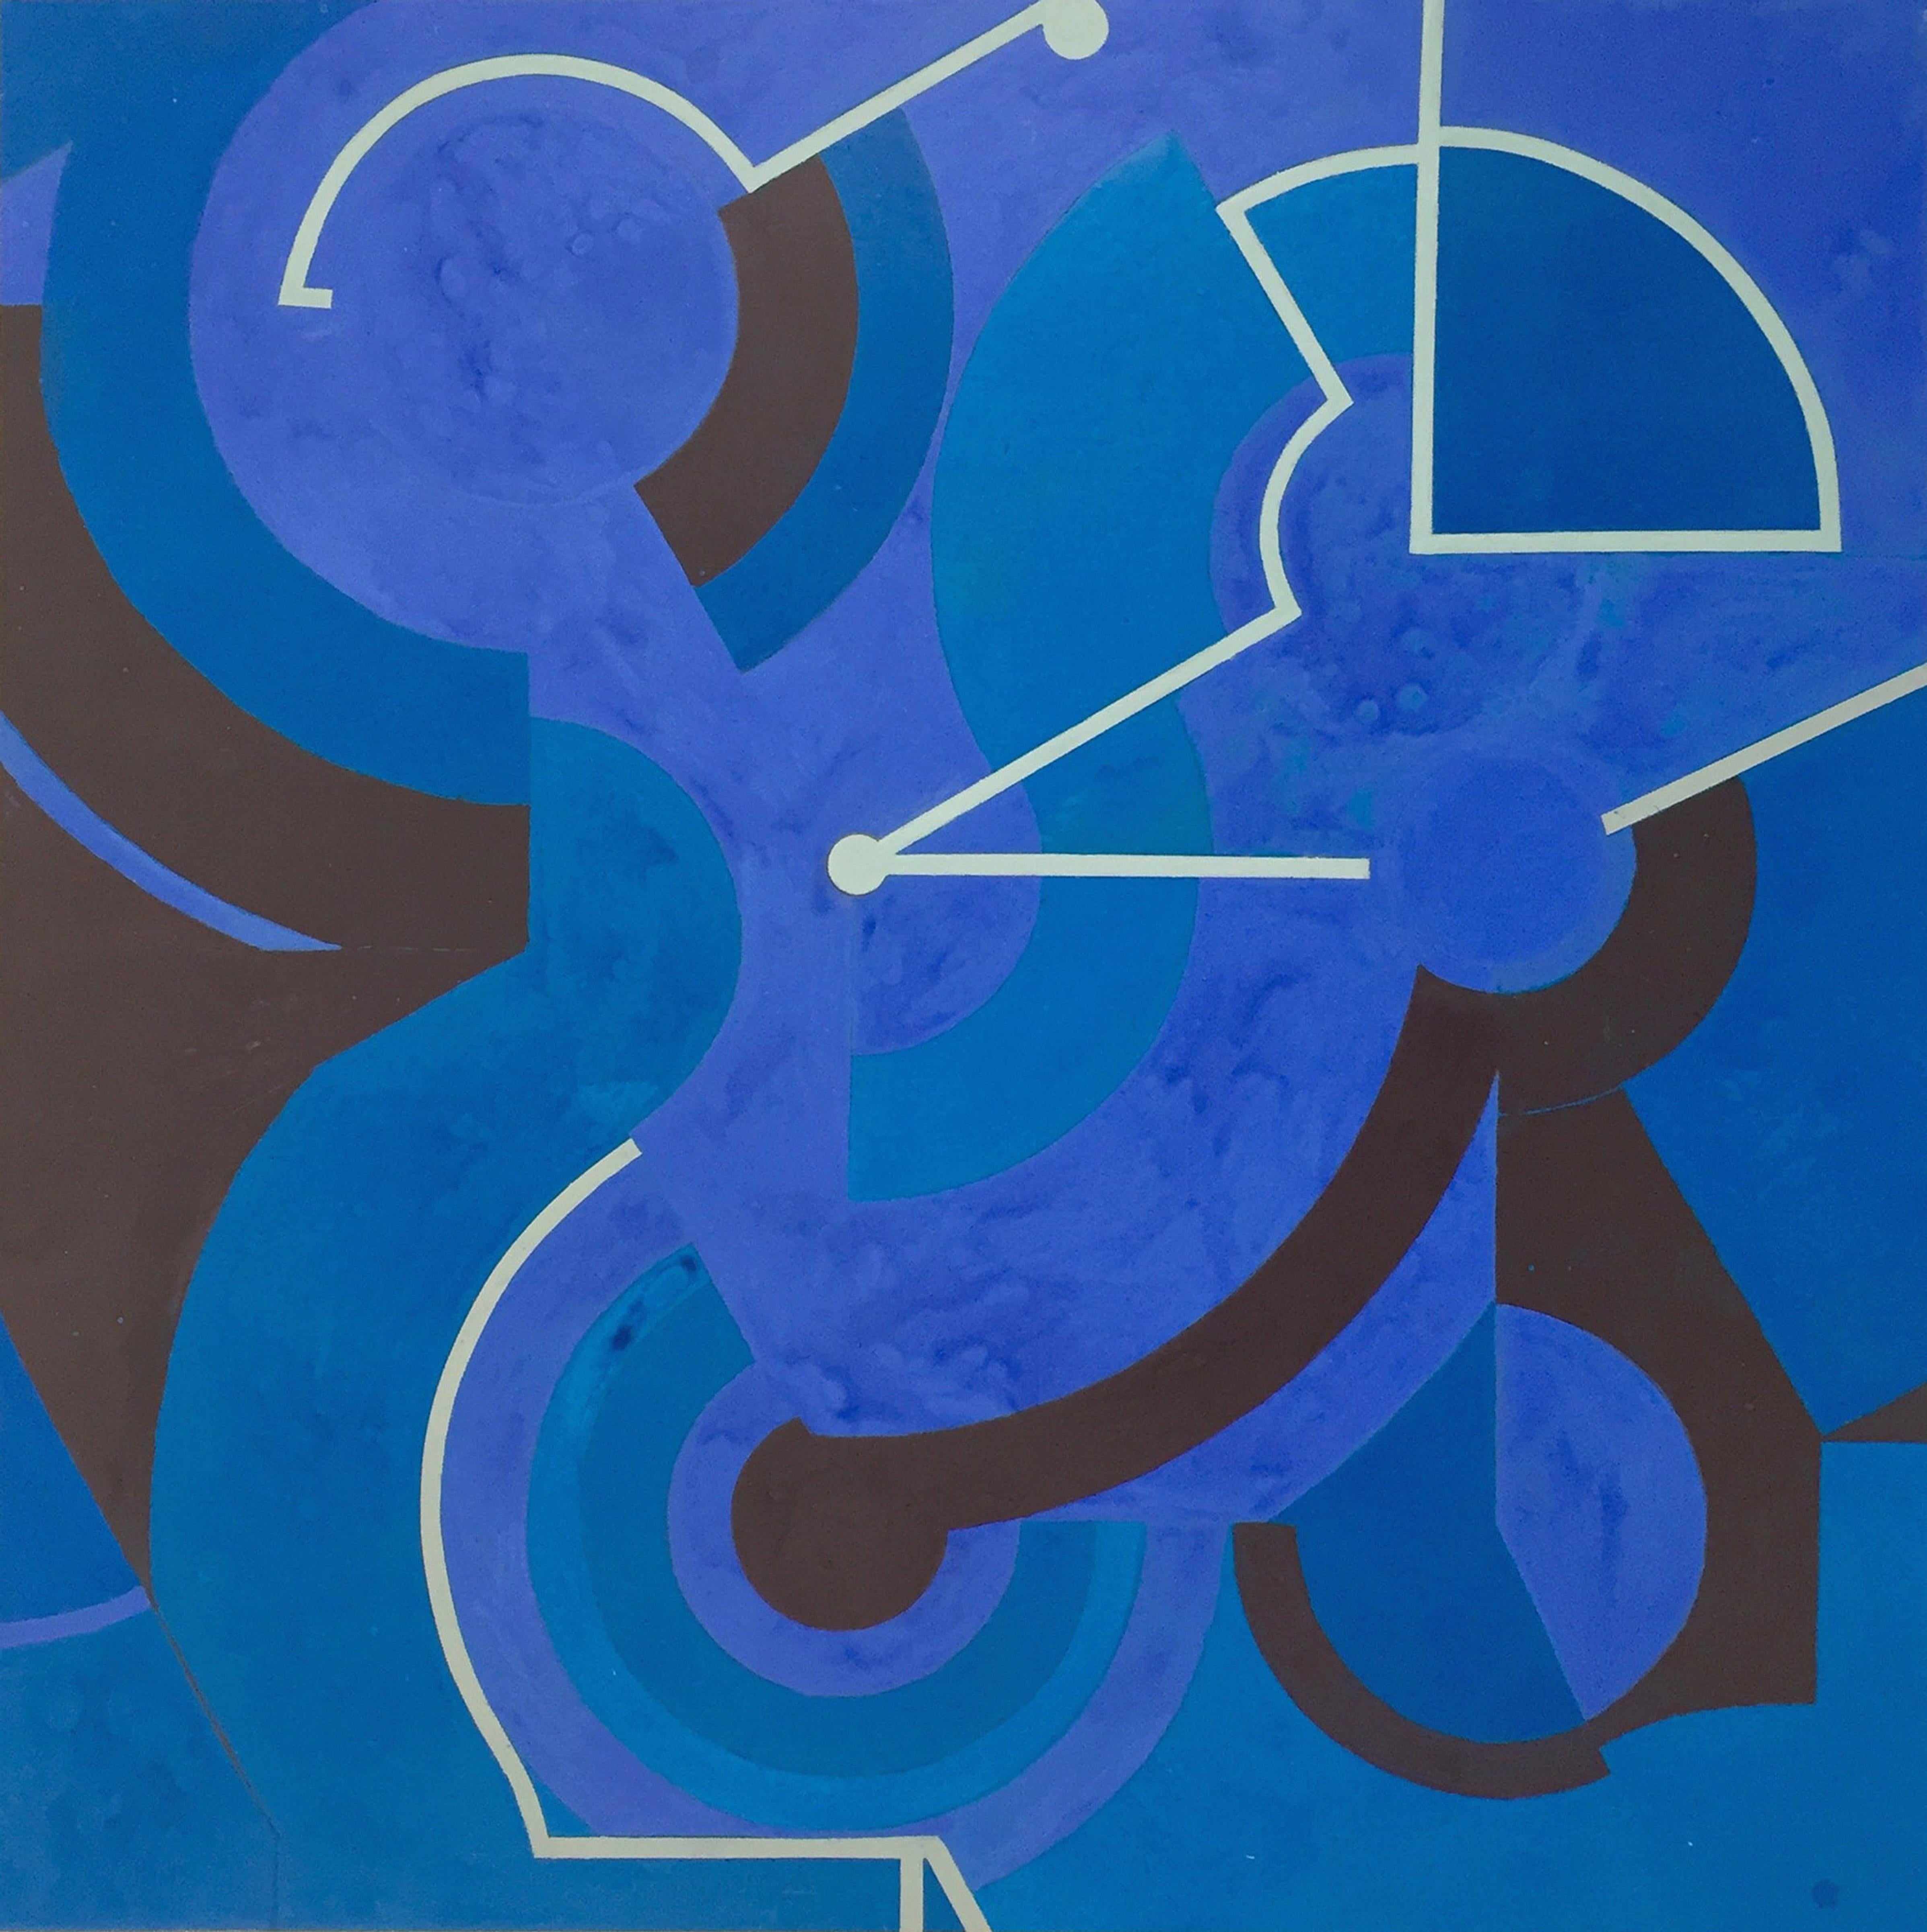 Abstract Painting Jeanette Fintz - Divining Blue n°1 (peinture abstraite géométrique imbriquée en bleu et noir)